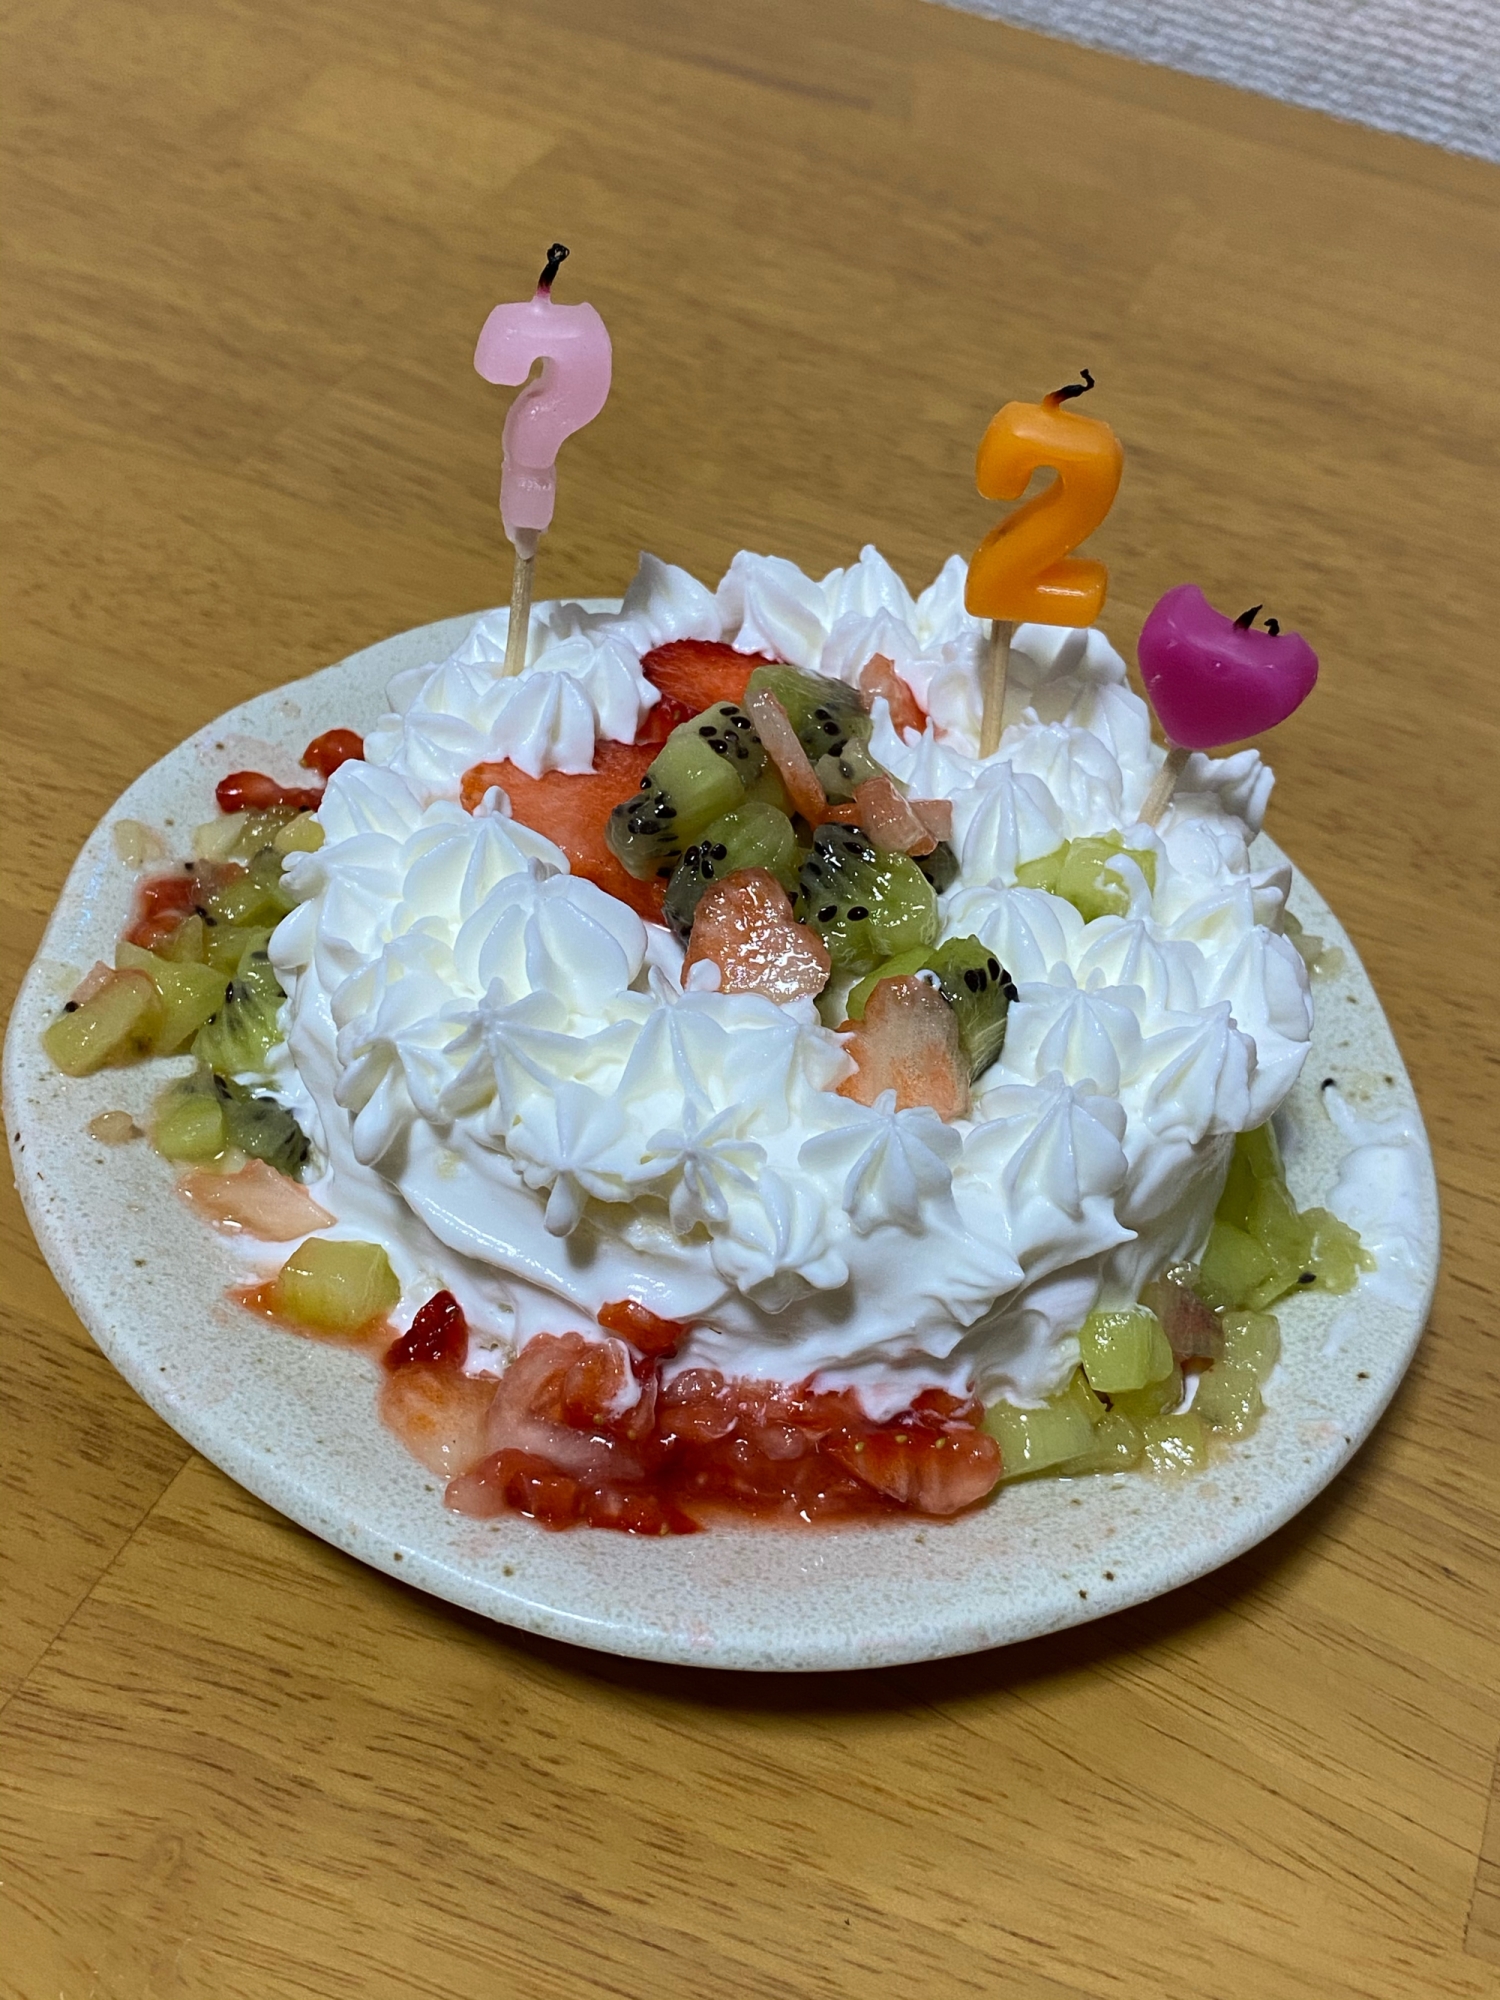 可愛い誕生日ケーキ レシピ 作り方 By Natukitchen 楽天レシピ